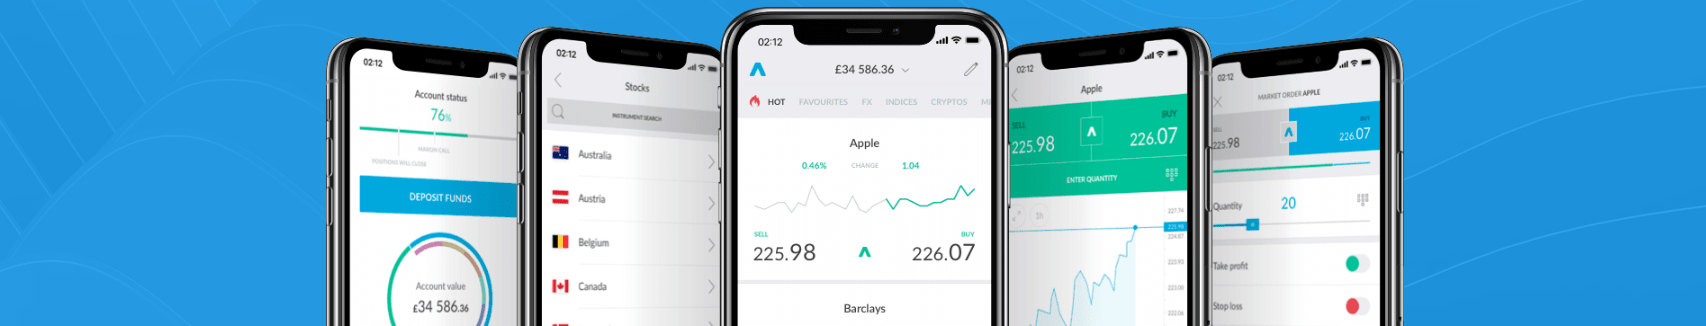 mobile Trading App212